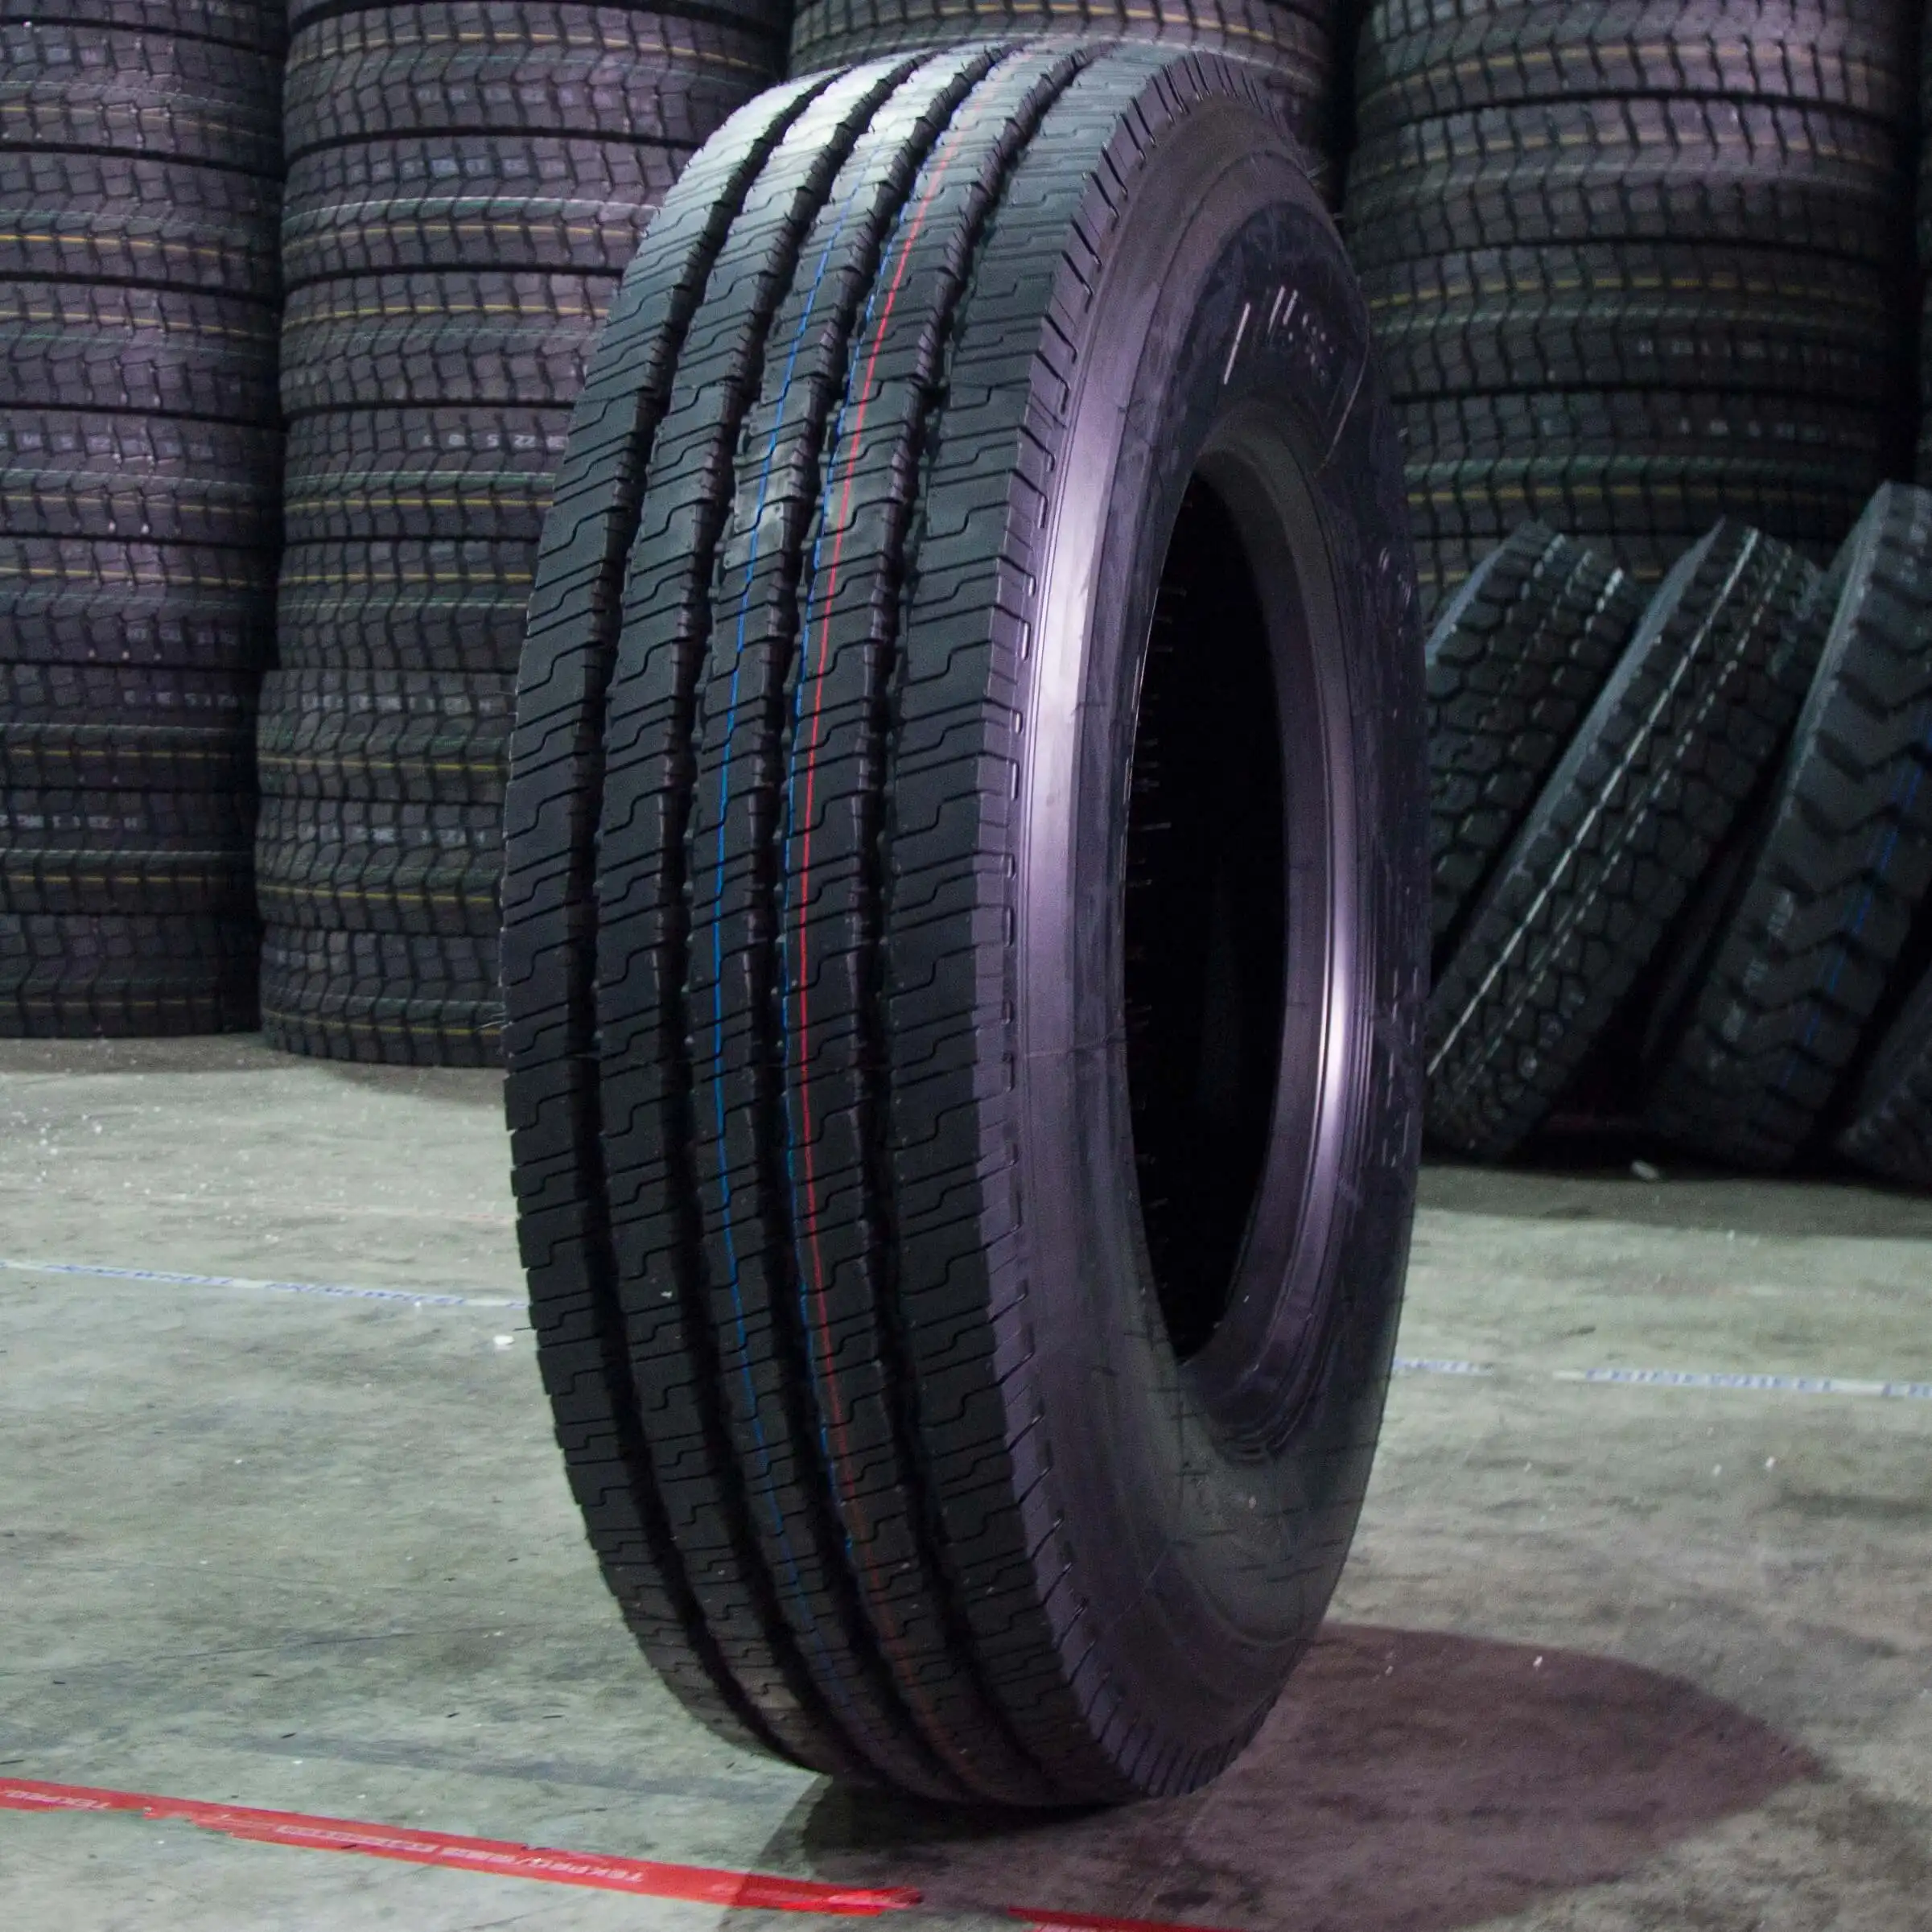 Cina fornitore di qualità 12.00 r20-20 315 80 22.5 425/85 r21 anticipo fuori strada pesante pneumatici pneumatici per camion pneumatici commerciali prezzi